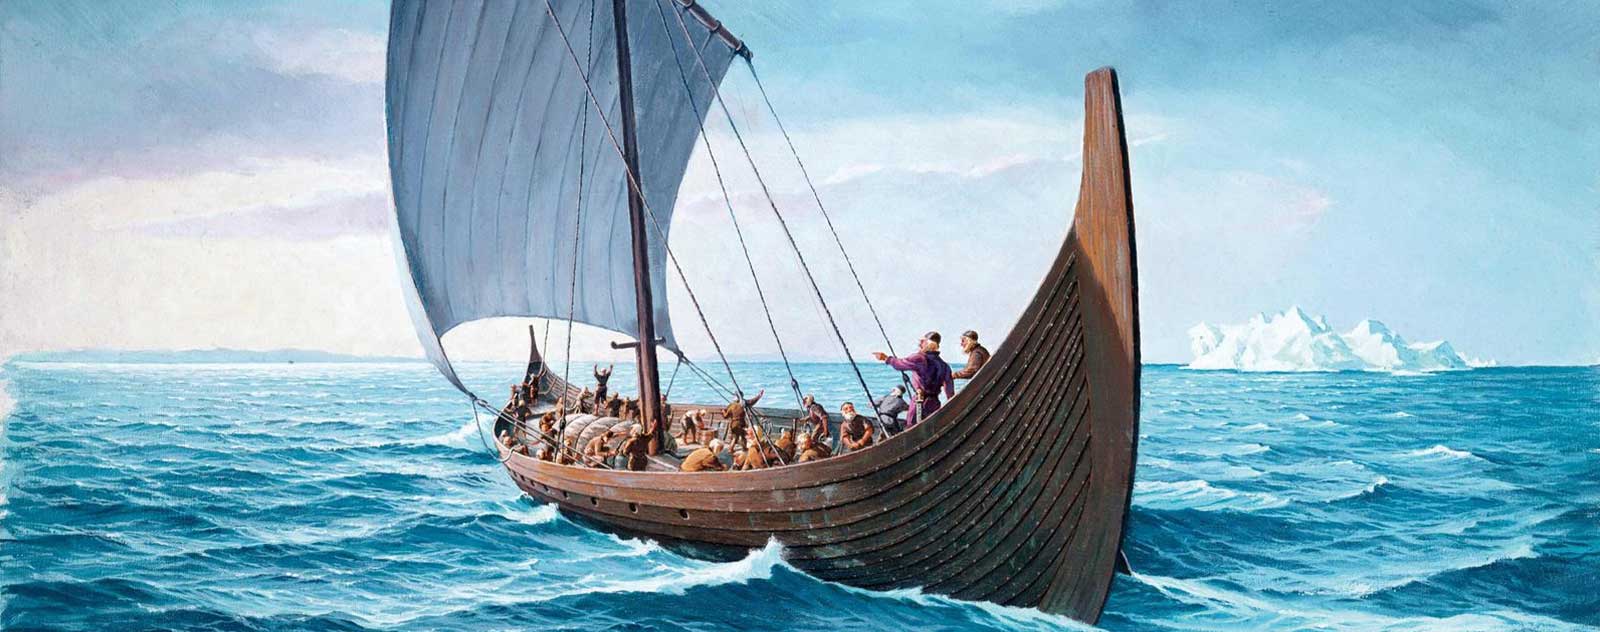 Vikings disparition Groenland